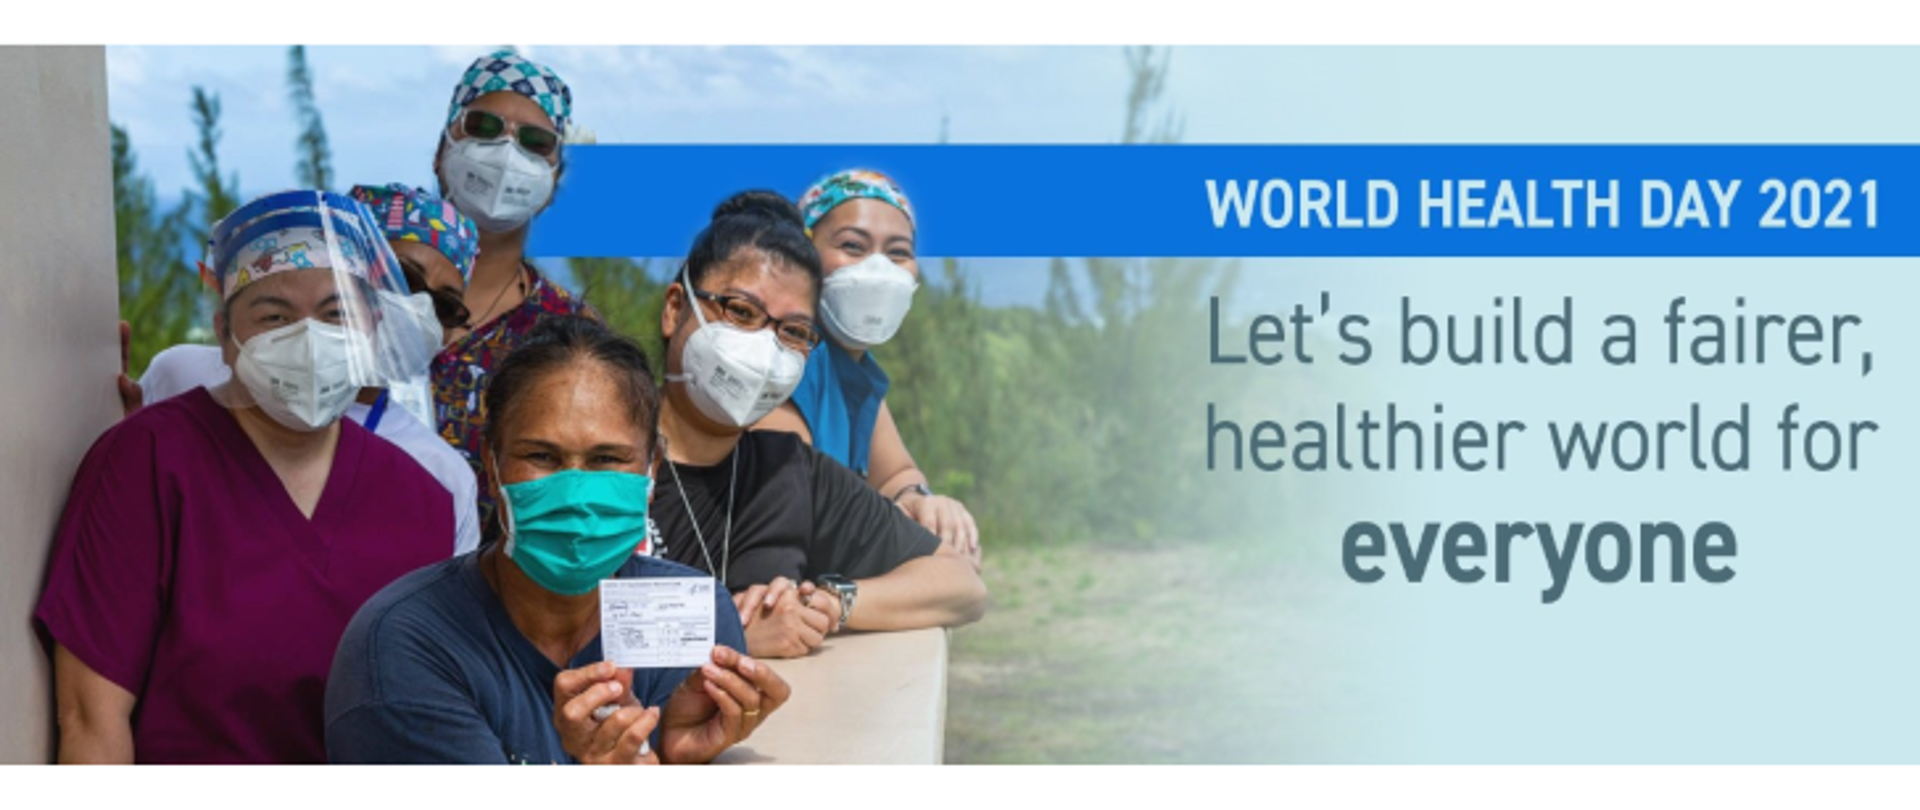 Po lewej pracownicy służby zdrowia w maseczkach ochronnych, po prawej hasło Światowego Dnia Zdrowia w języku angielskim: Let's build a fairer, healthier world for everyone